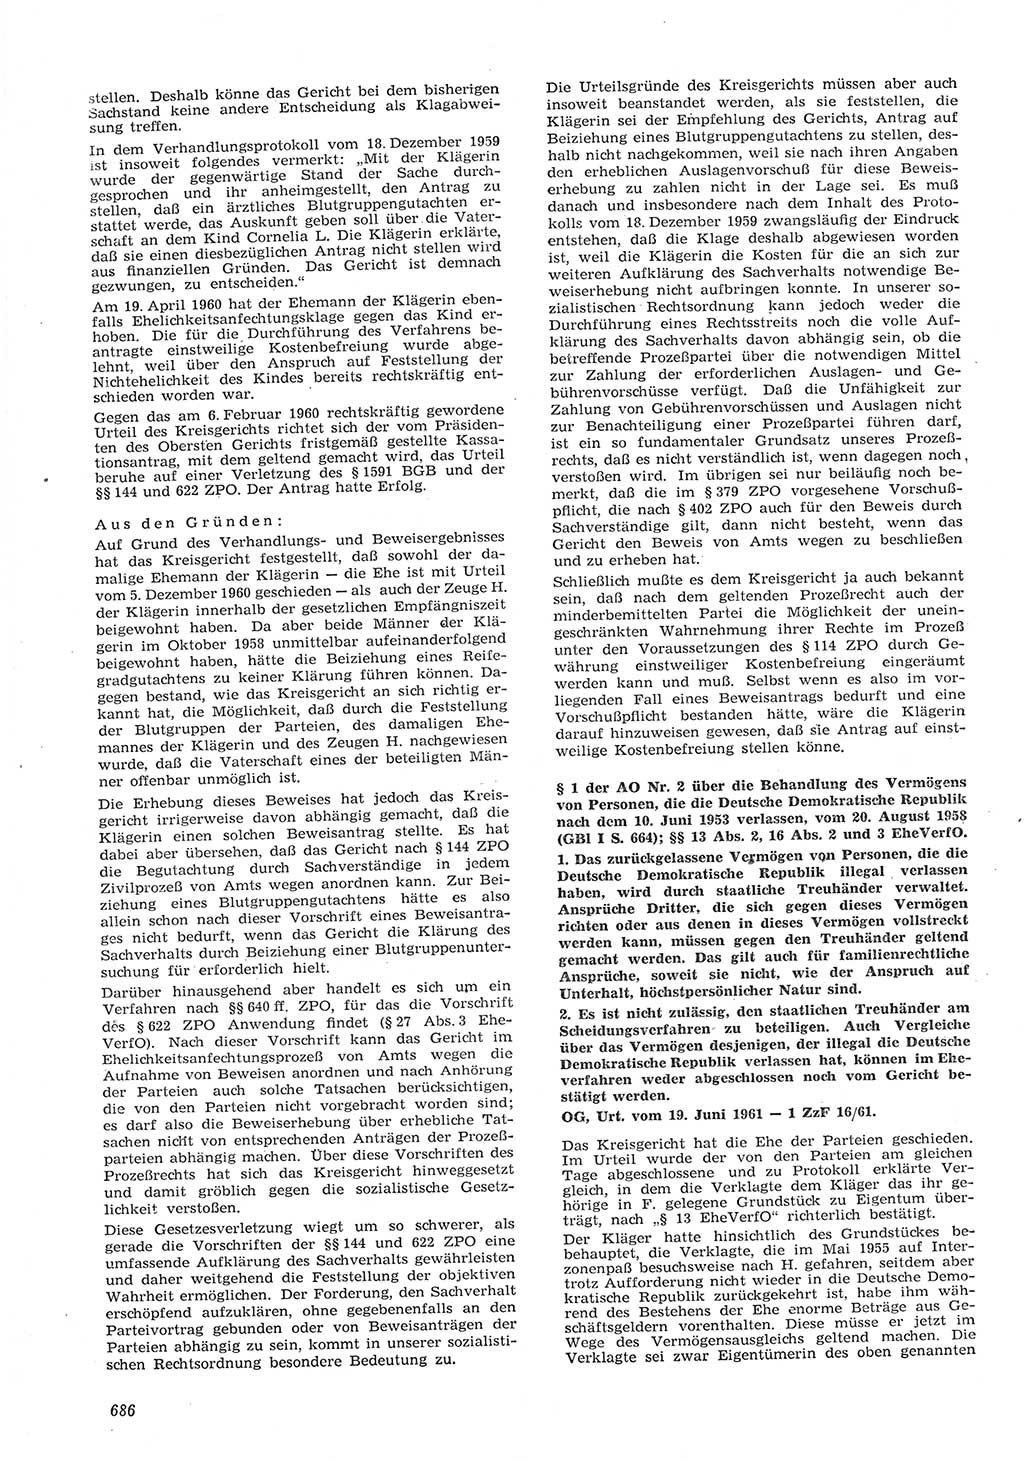 Neue Justiz (NJ), Zeitschrift für Recht und Rechtswissenschaft [Deutsche Demokratische Republik (DDR)], 15. Jahrgang 1961, Seite 686 (NJ DDR 1961, S. 686)